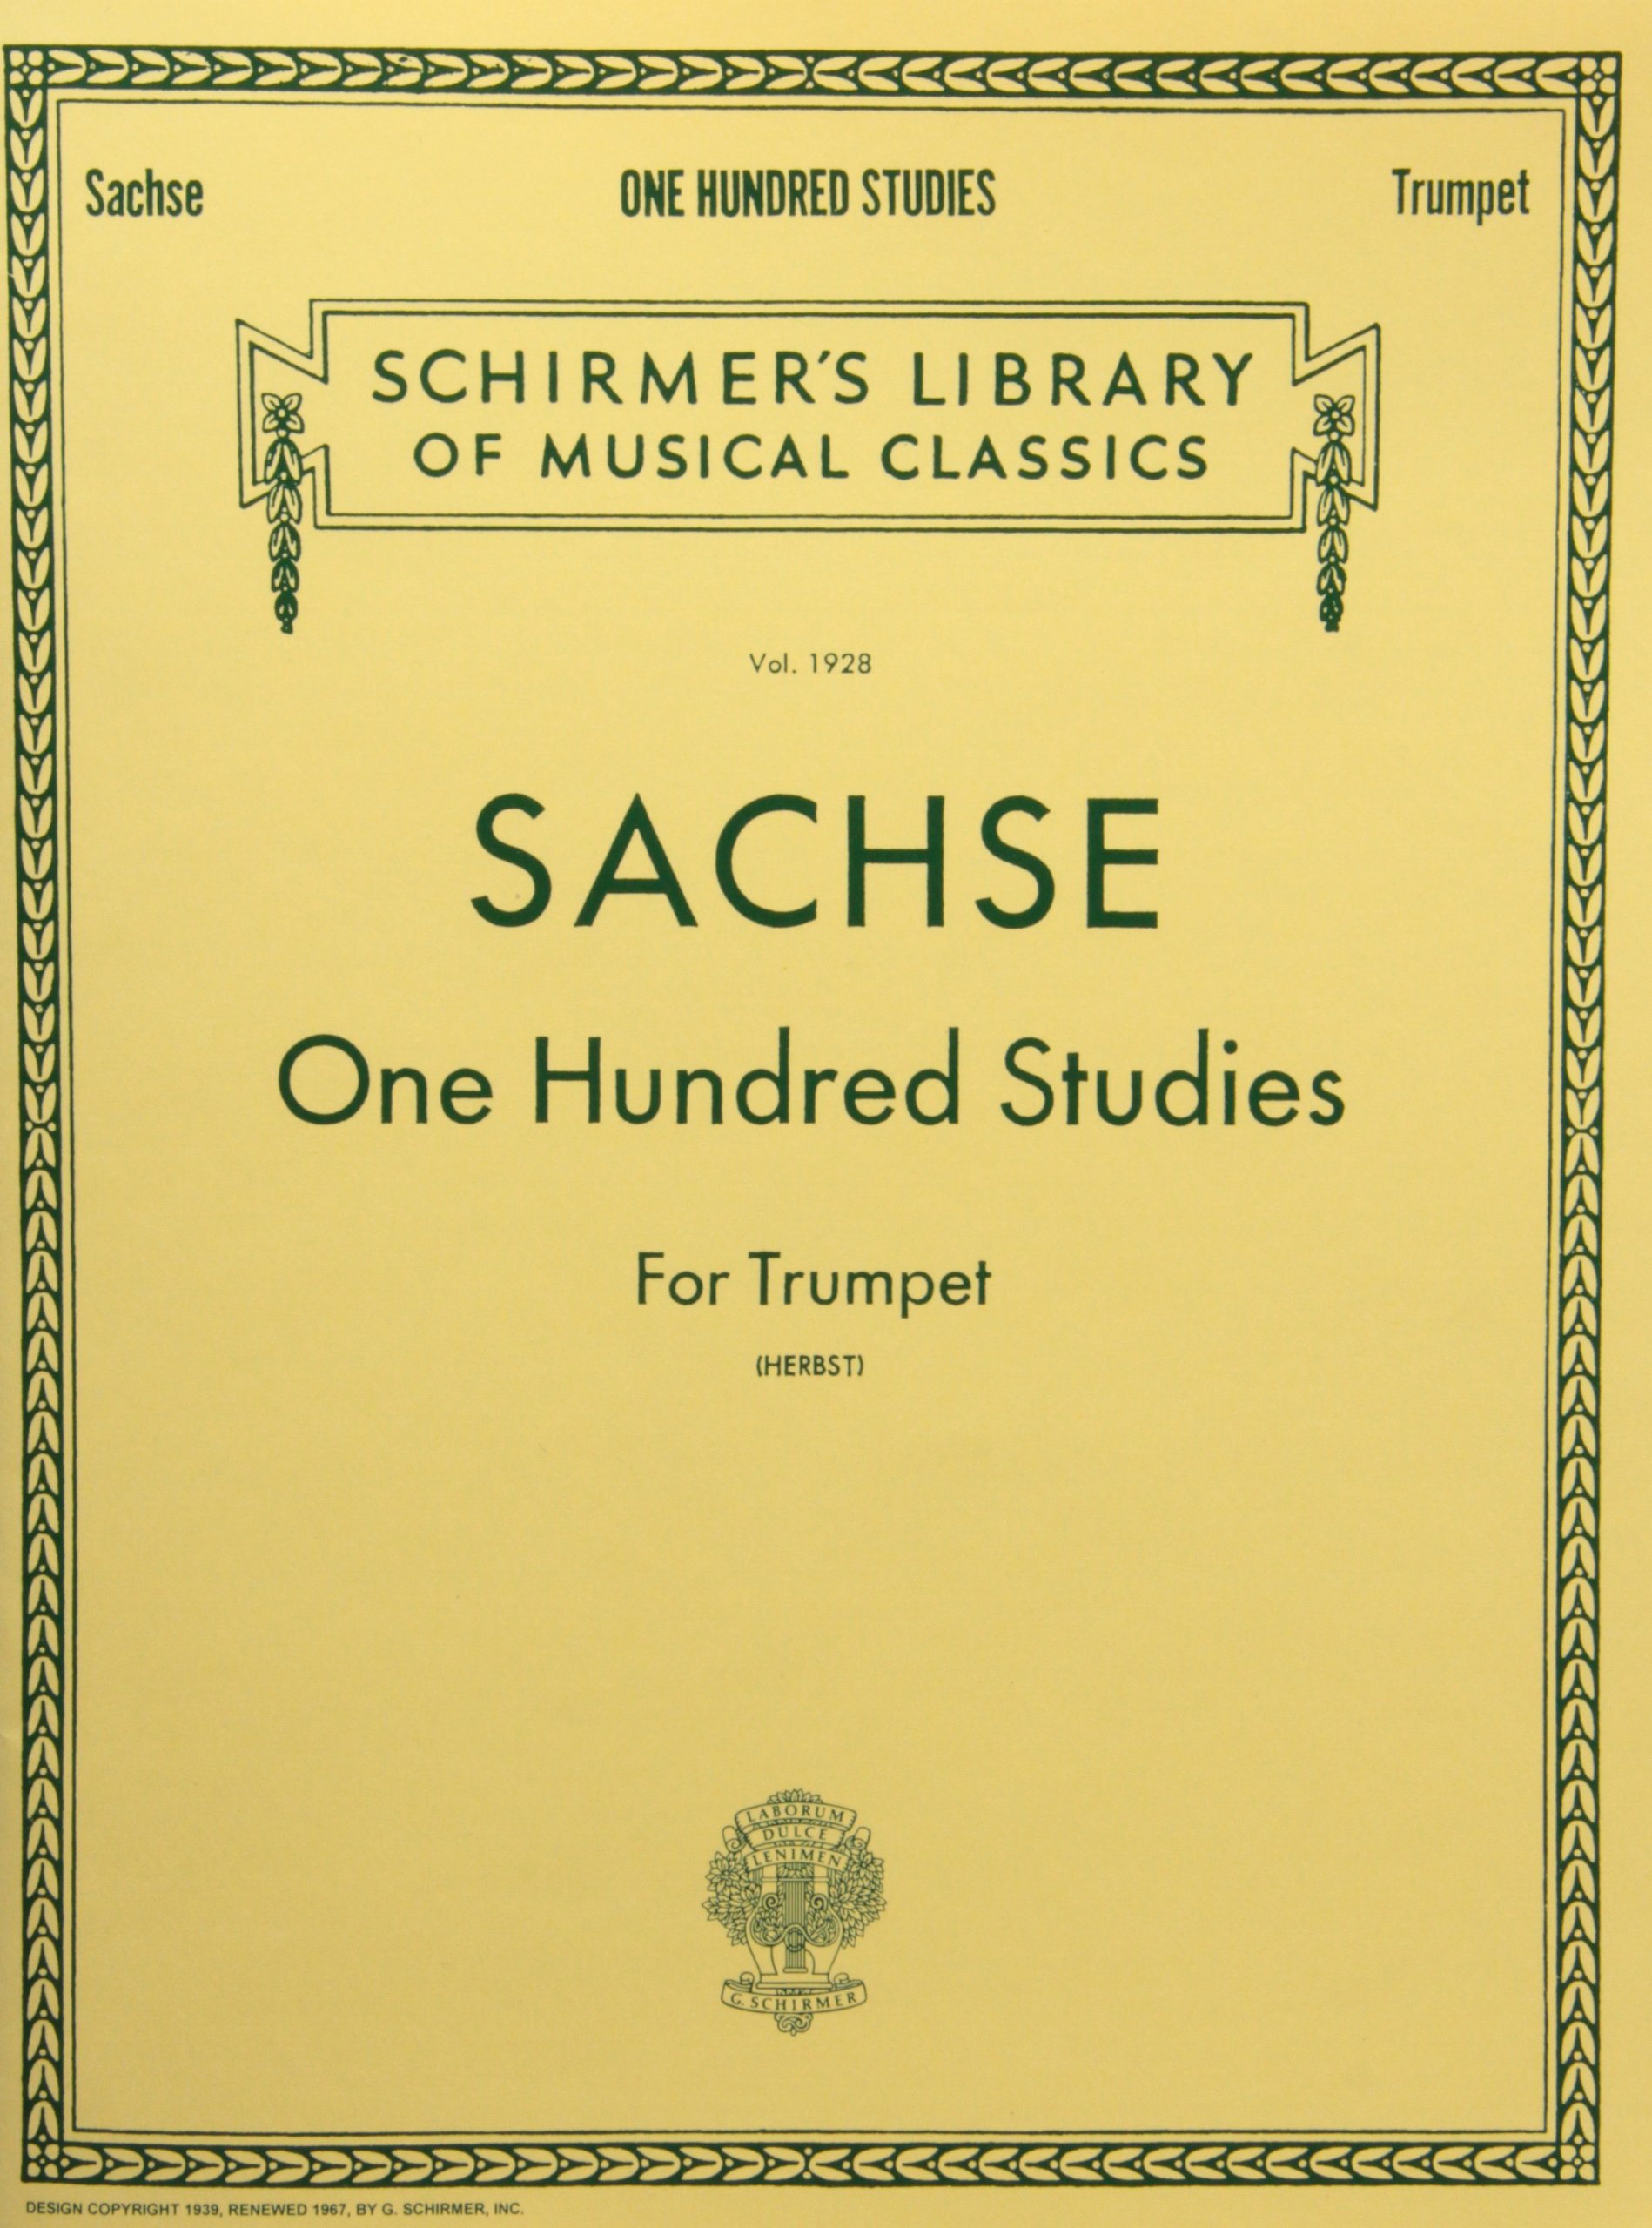 Sachse 100 etudes pdf reader free